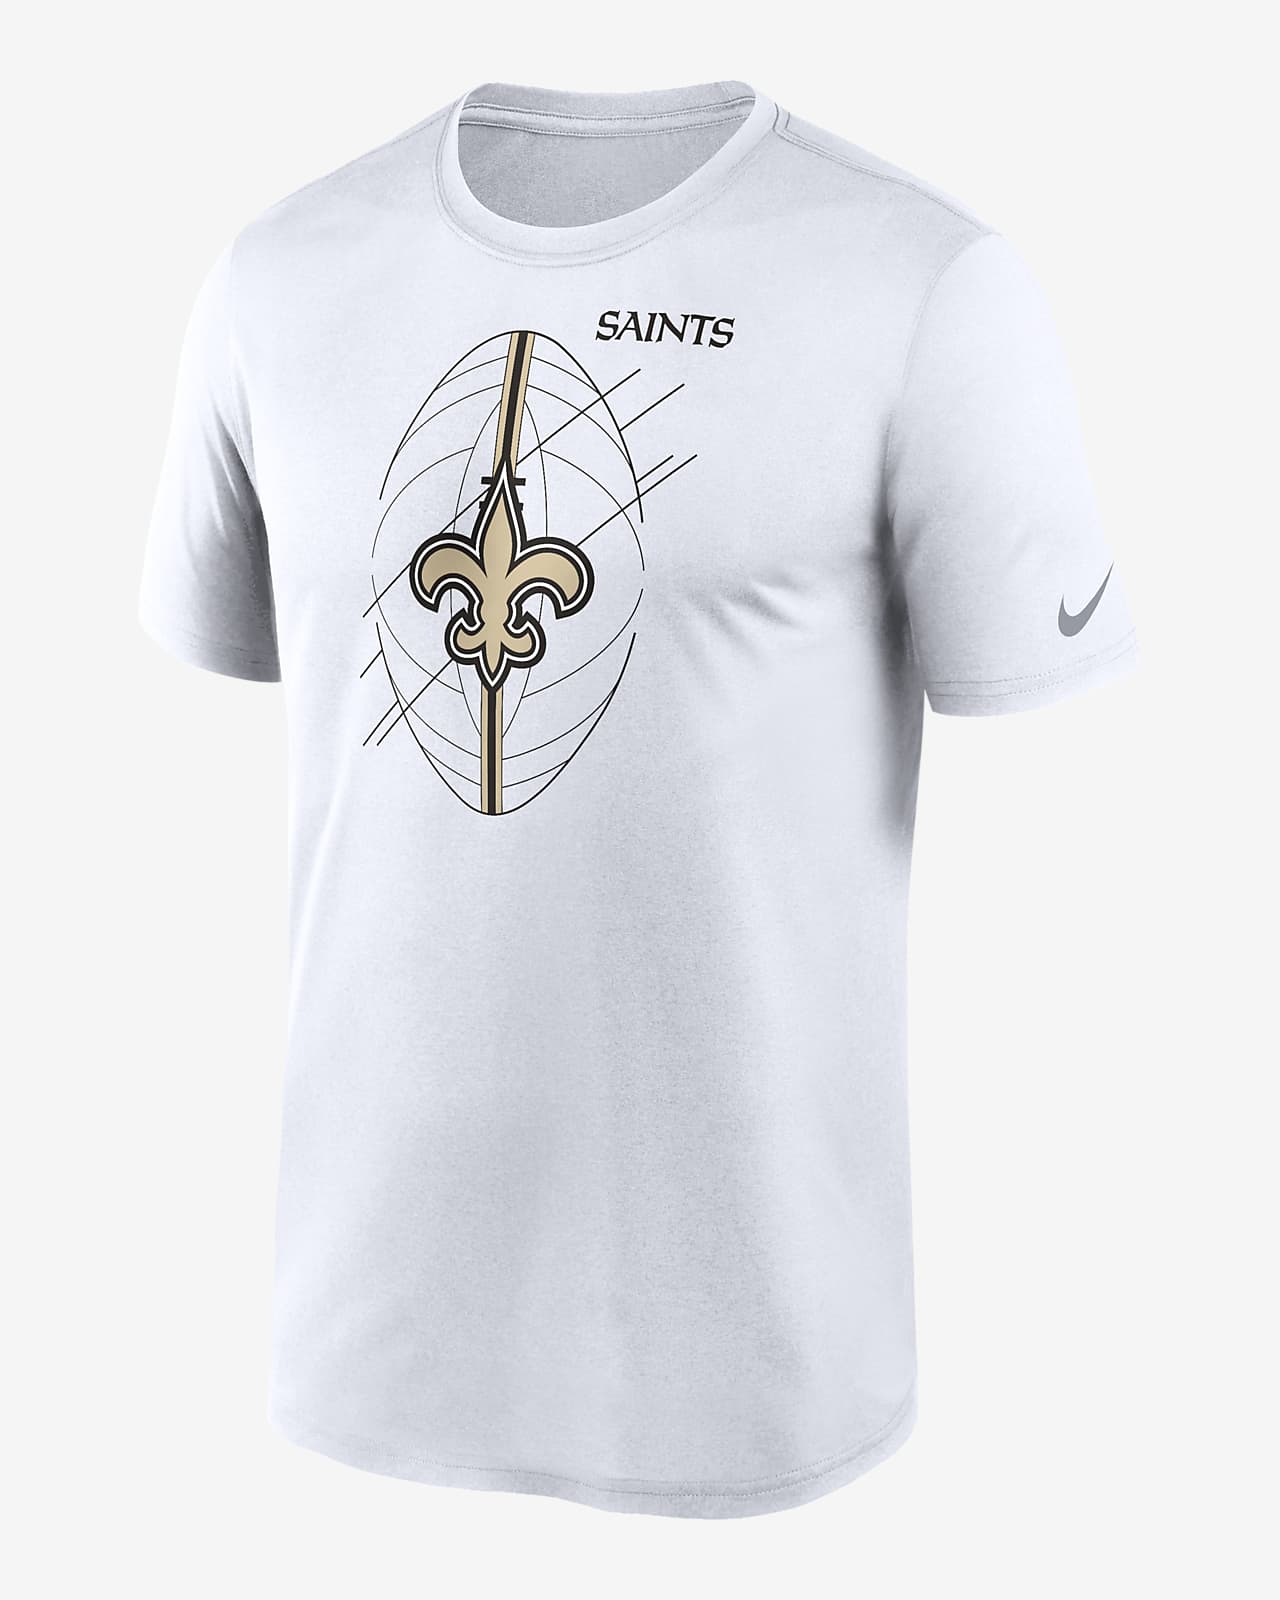 Nike, Shirts, Mens Nike Long Sleeve Saints Drifit Team Shirt Sz Lg 970